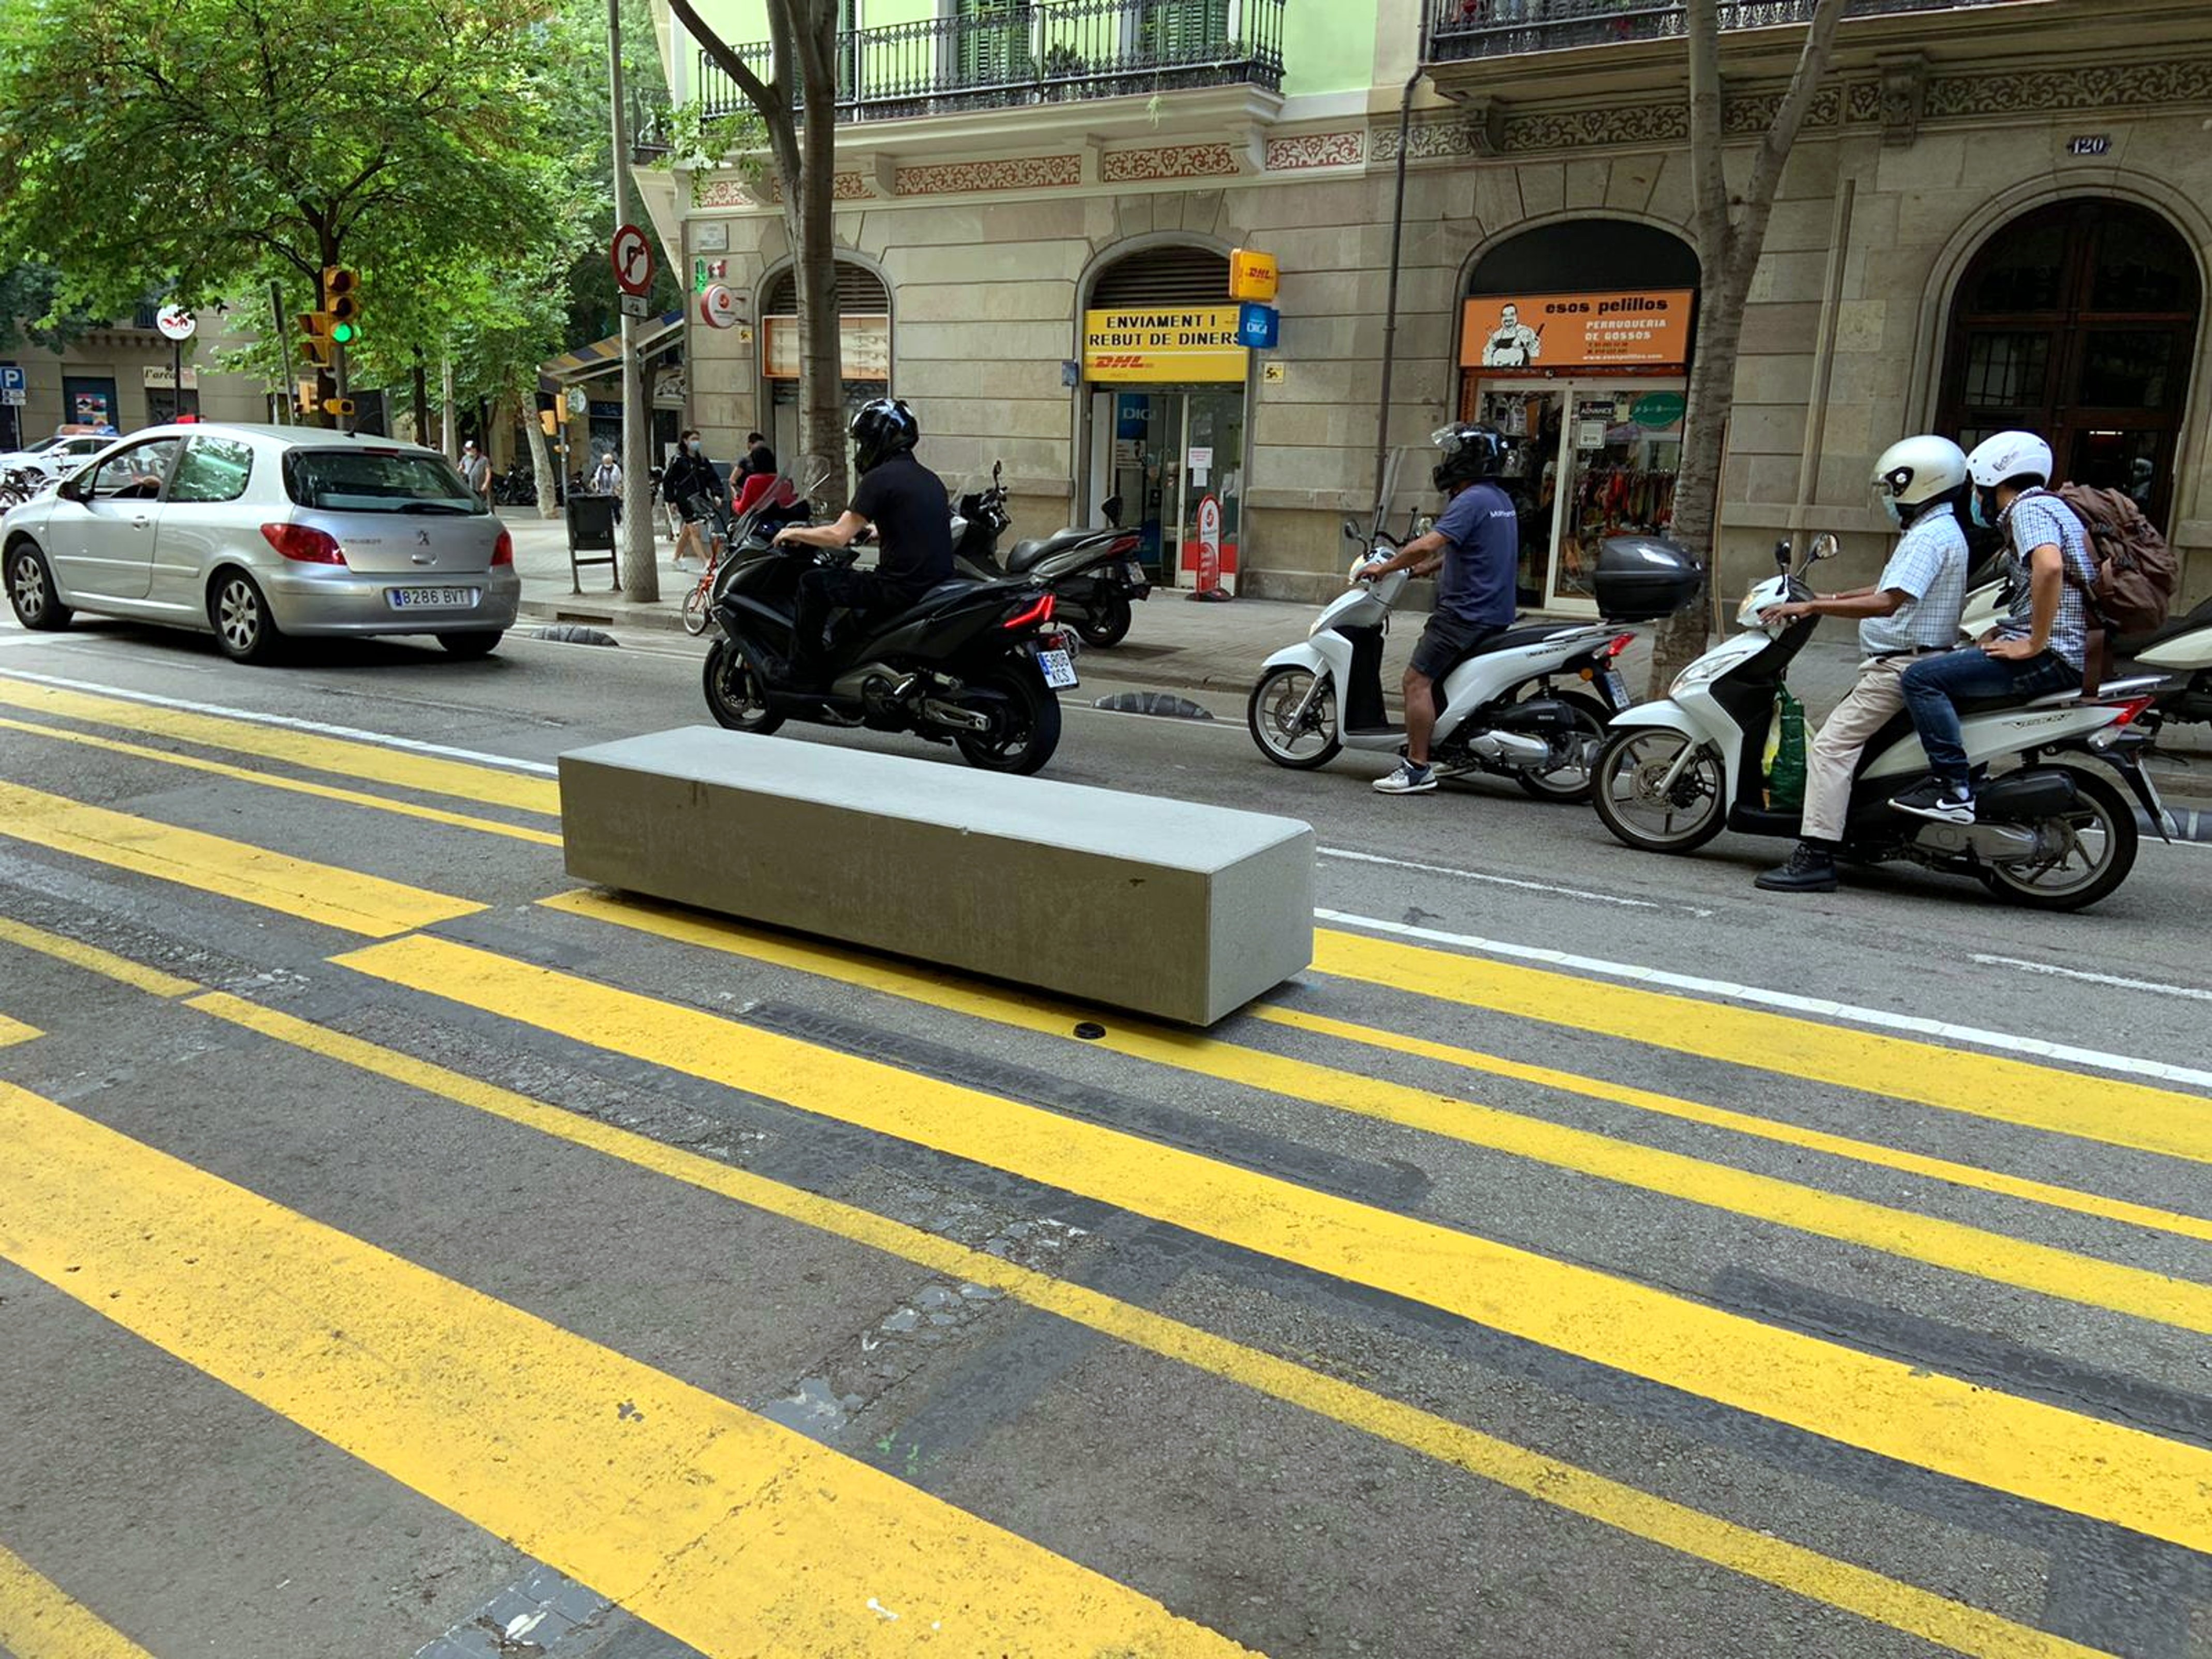 Barcelona substituirà els blocs de formigó de l'urbanisme tàctic